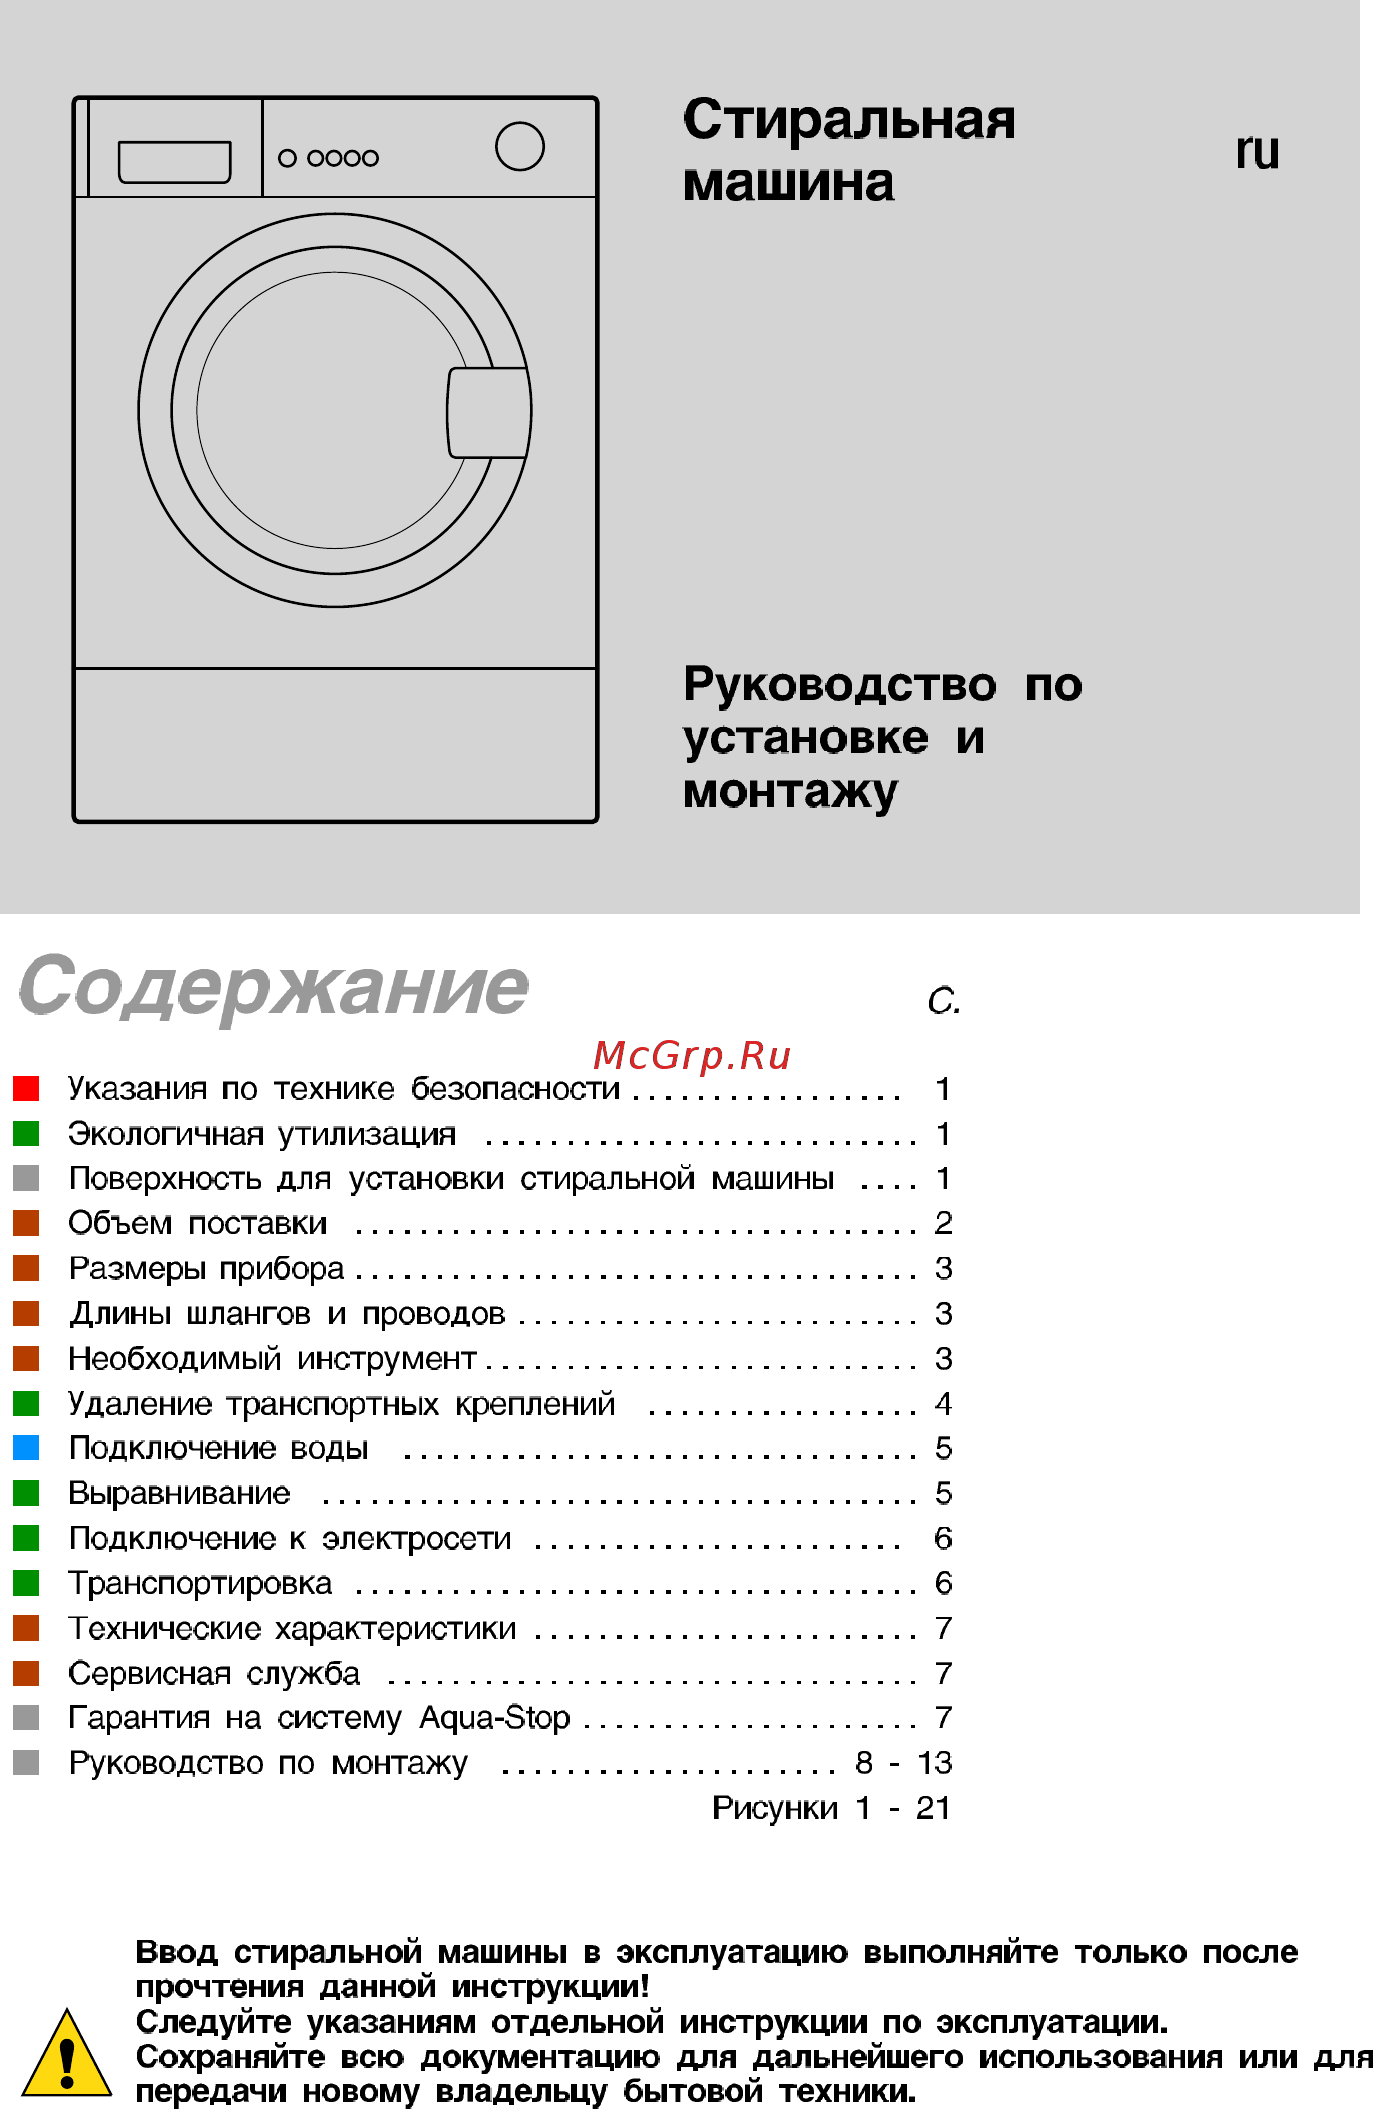 Инструкция применения стиральных машин автоматов